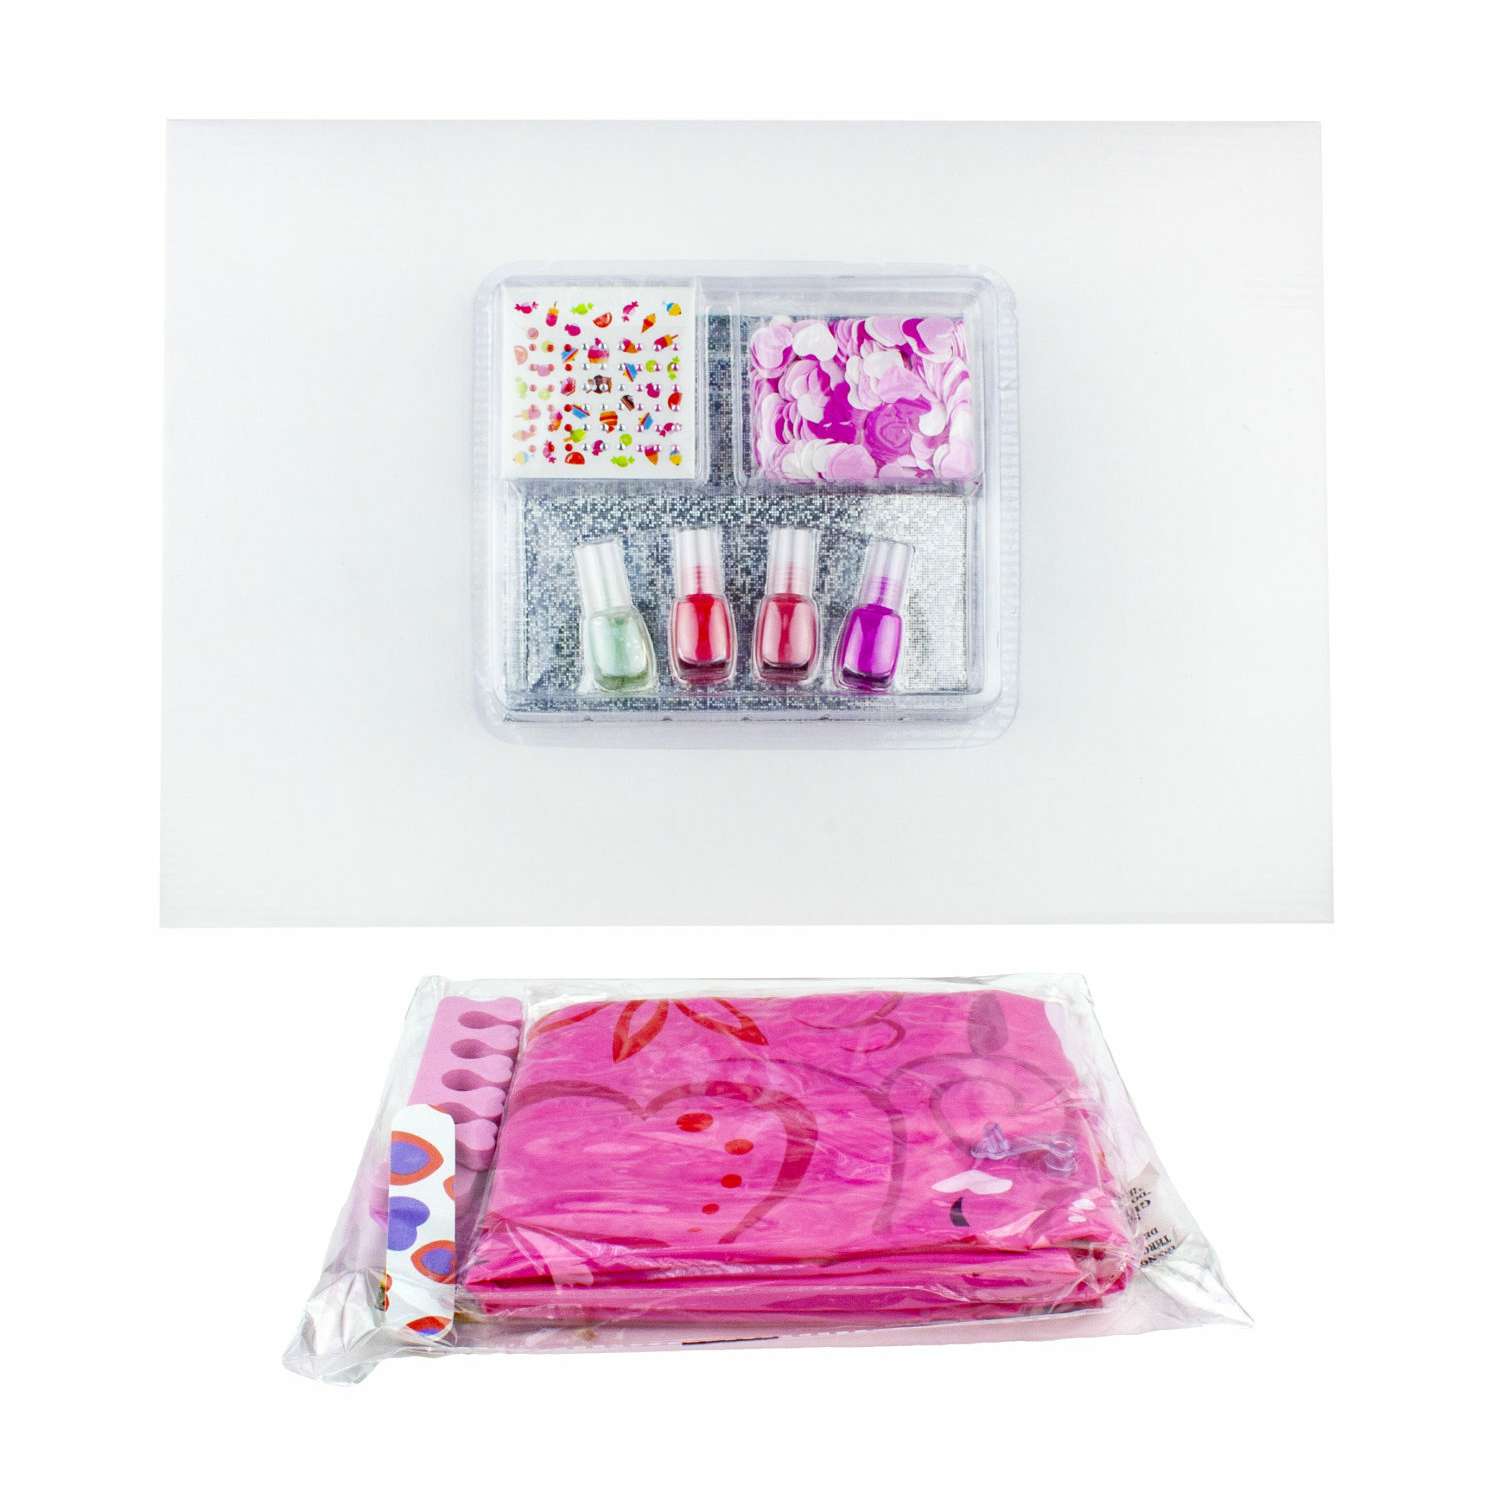 Педикюрный набор Lukky Бьюти-Дизайн с надувной ванночкой тапочками и пилочкой - фото 2